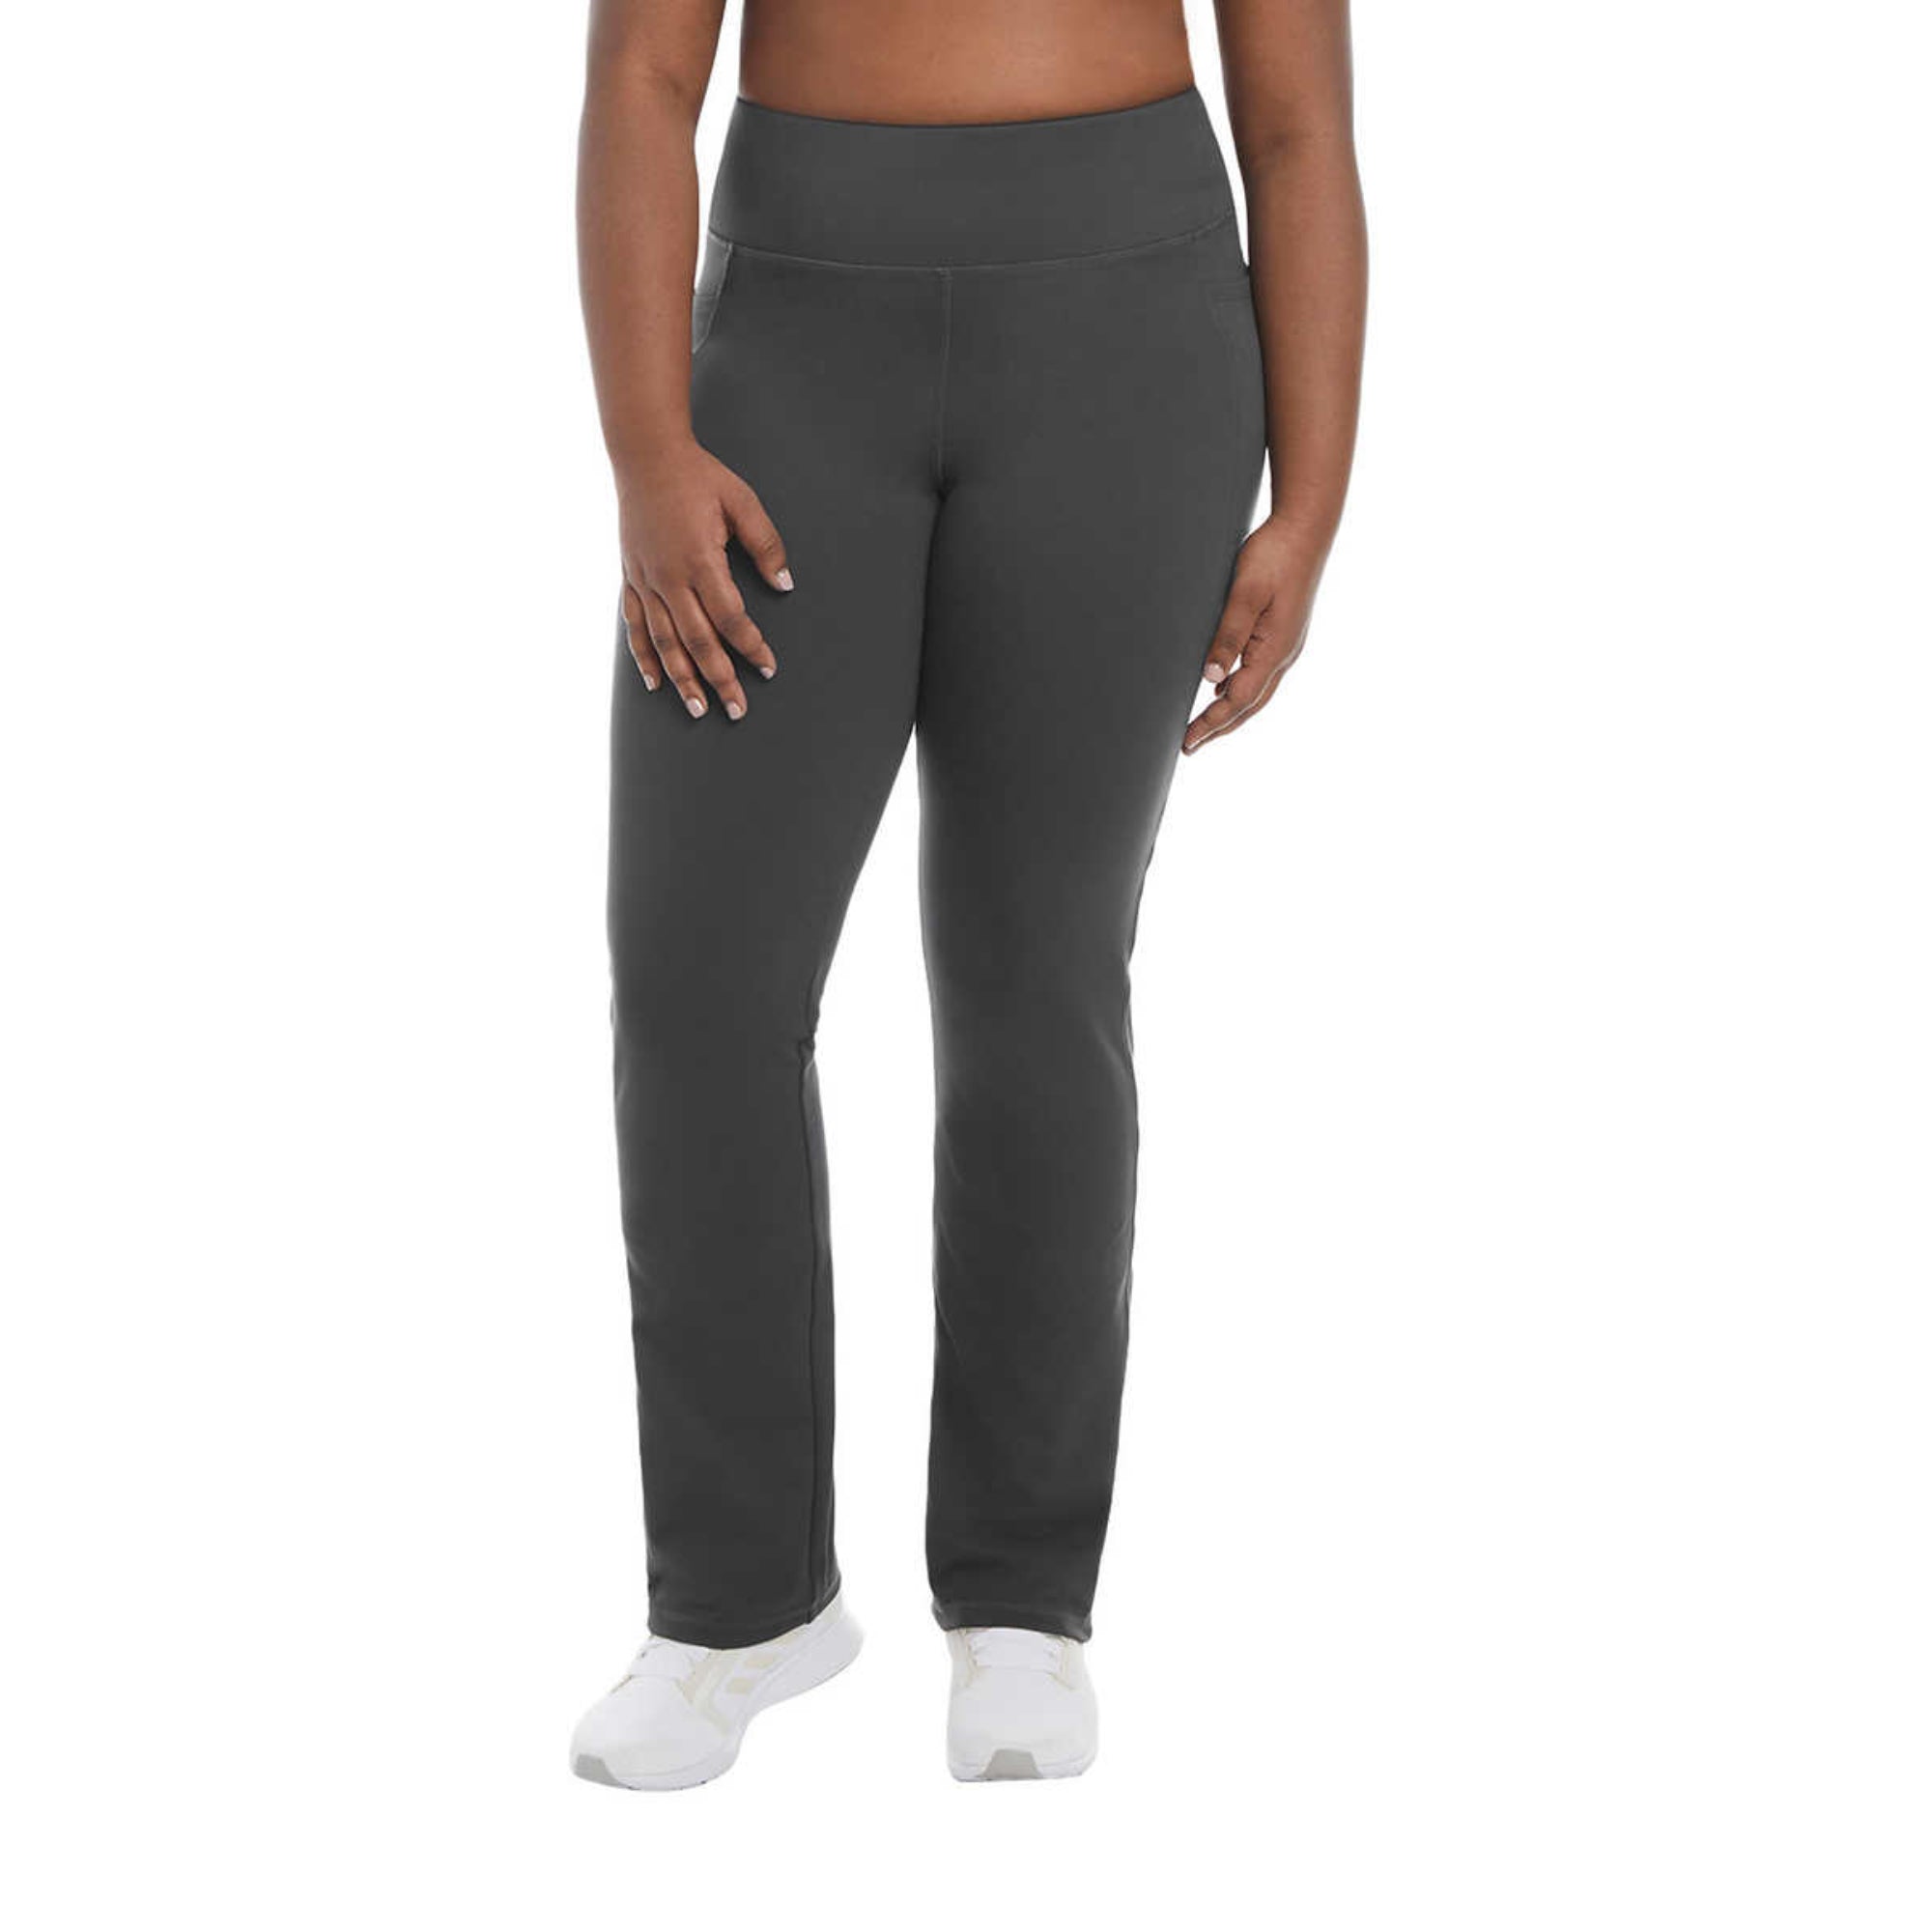 Jockey yoga pants #yoga #pants #leggings 100% cotton - Depop